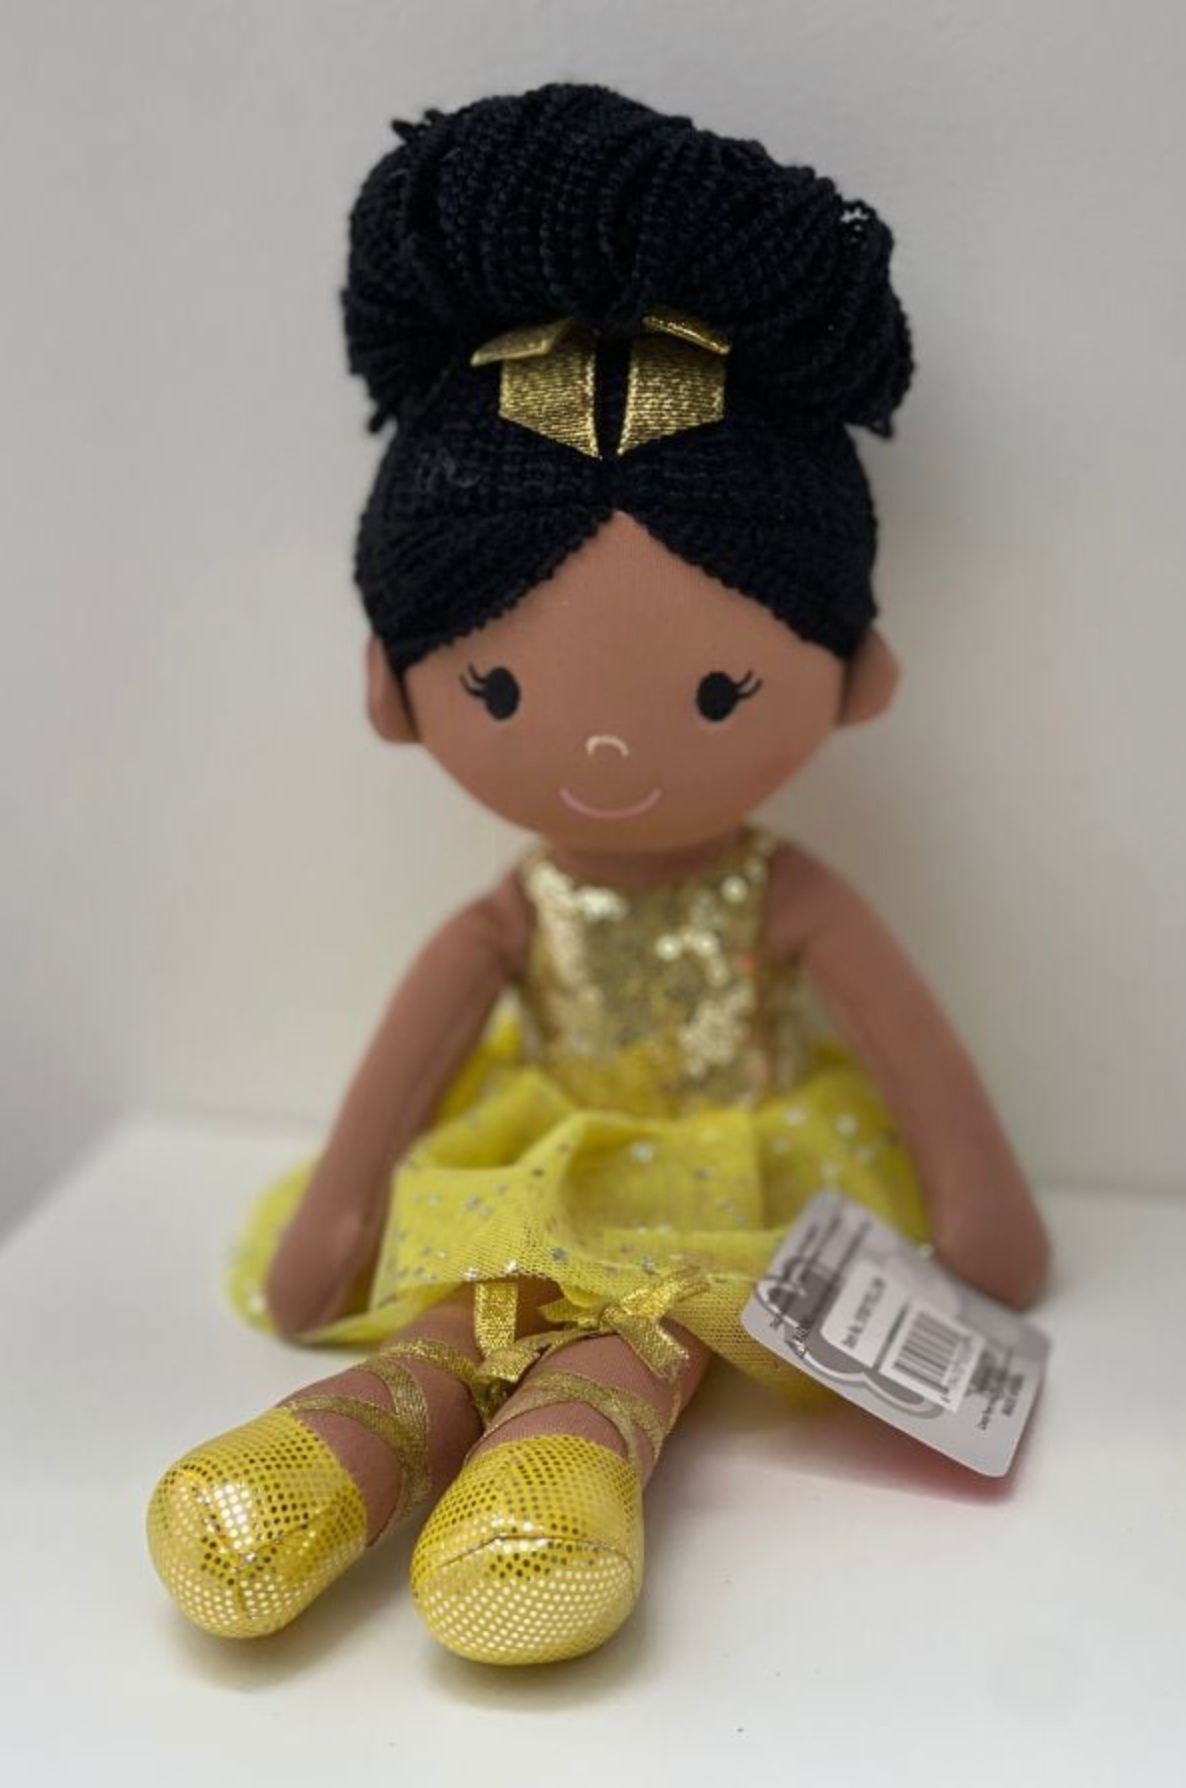 14 inch yellow dress ballerina doll dance gift at The Dance Shop Long Island